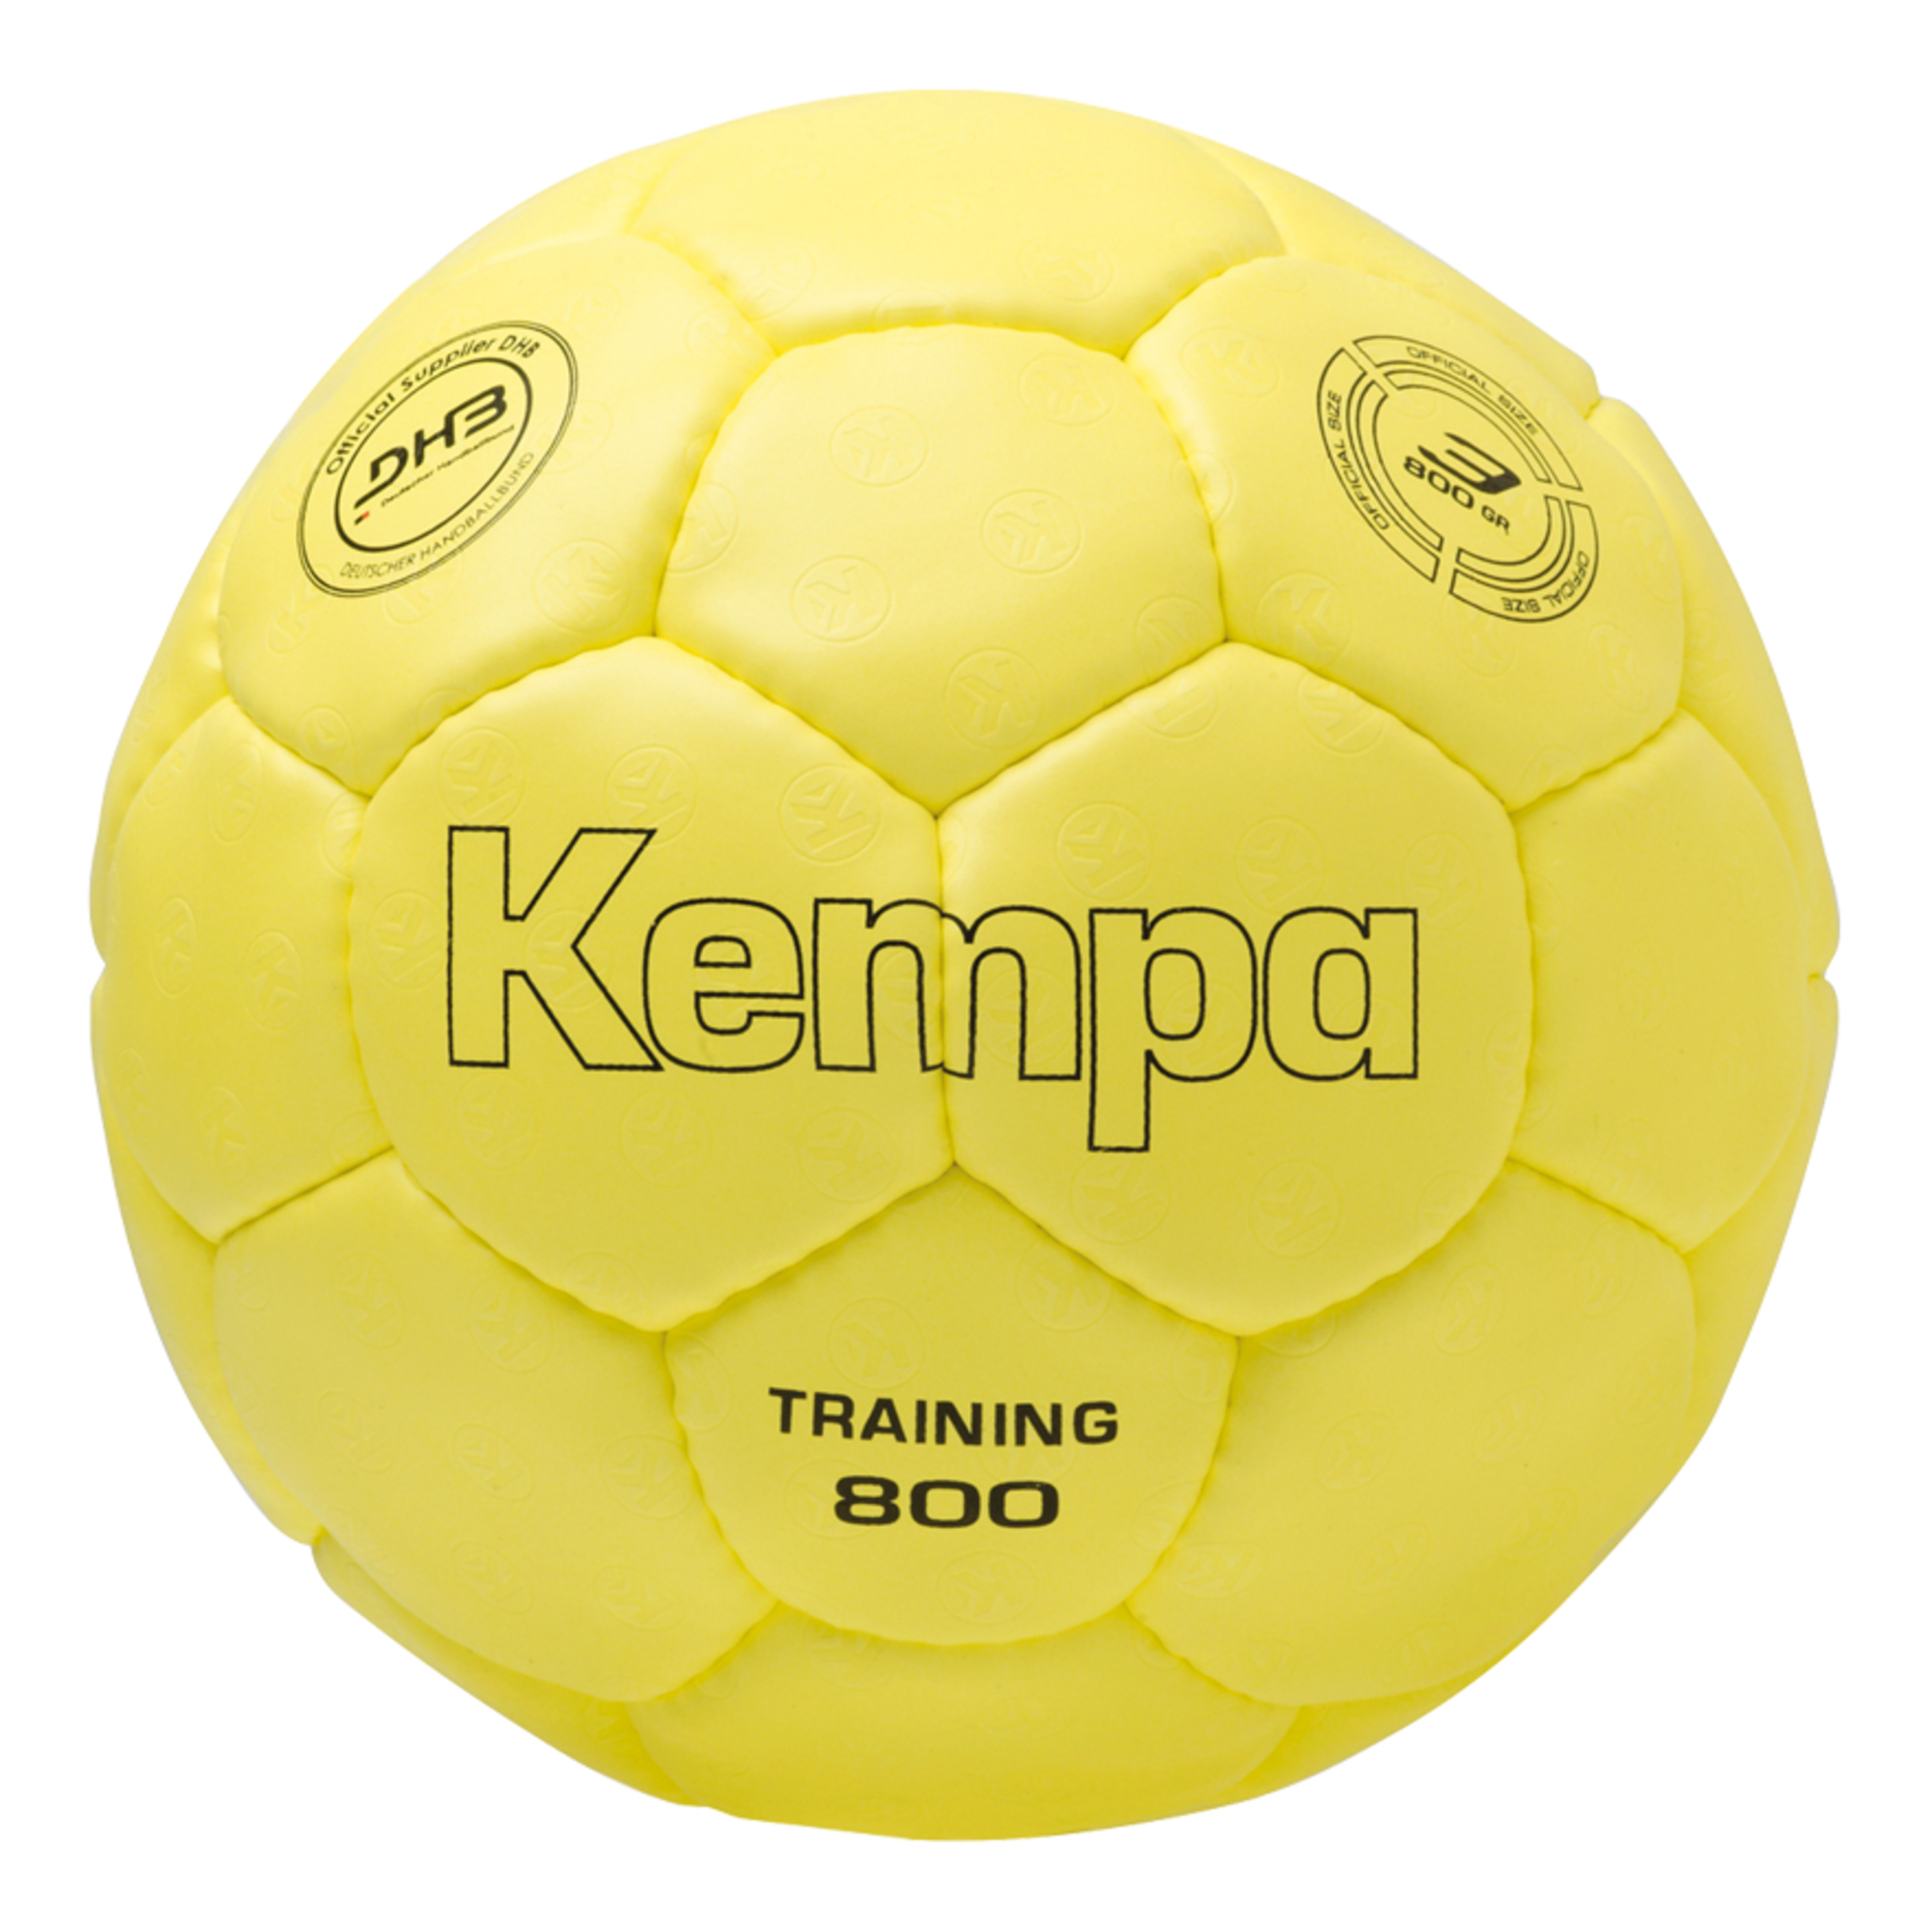 Training 800 Amarillo Kempa - amarillo-fluor - 